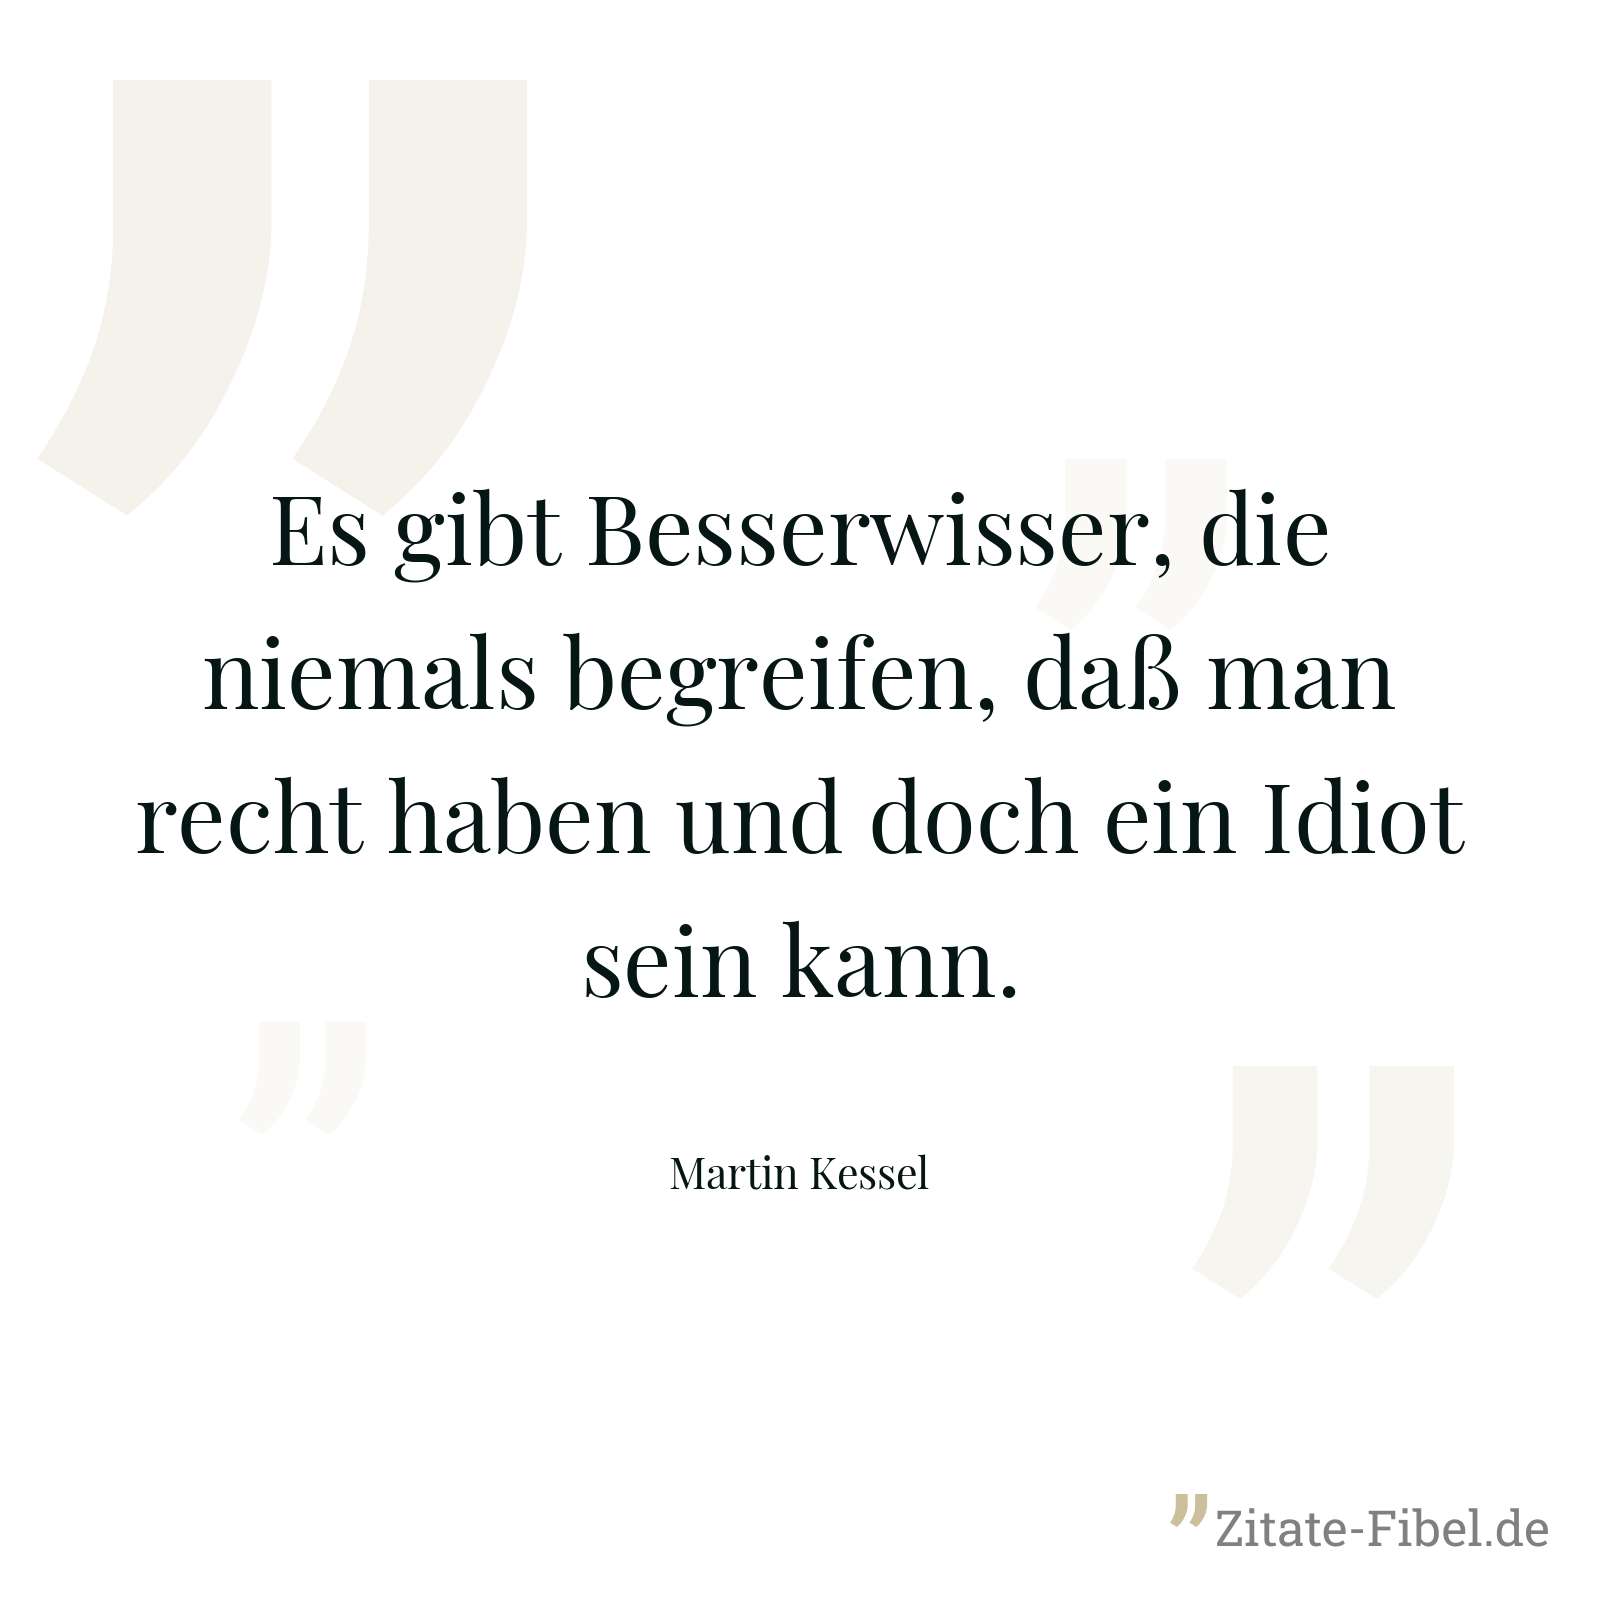 Es gibt Besserwisser, die niemals begreifen, daß man recht haben und doch ein Idiot sein kann. - Martin Kessel